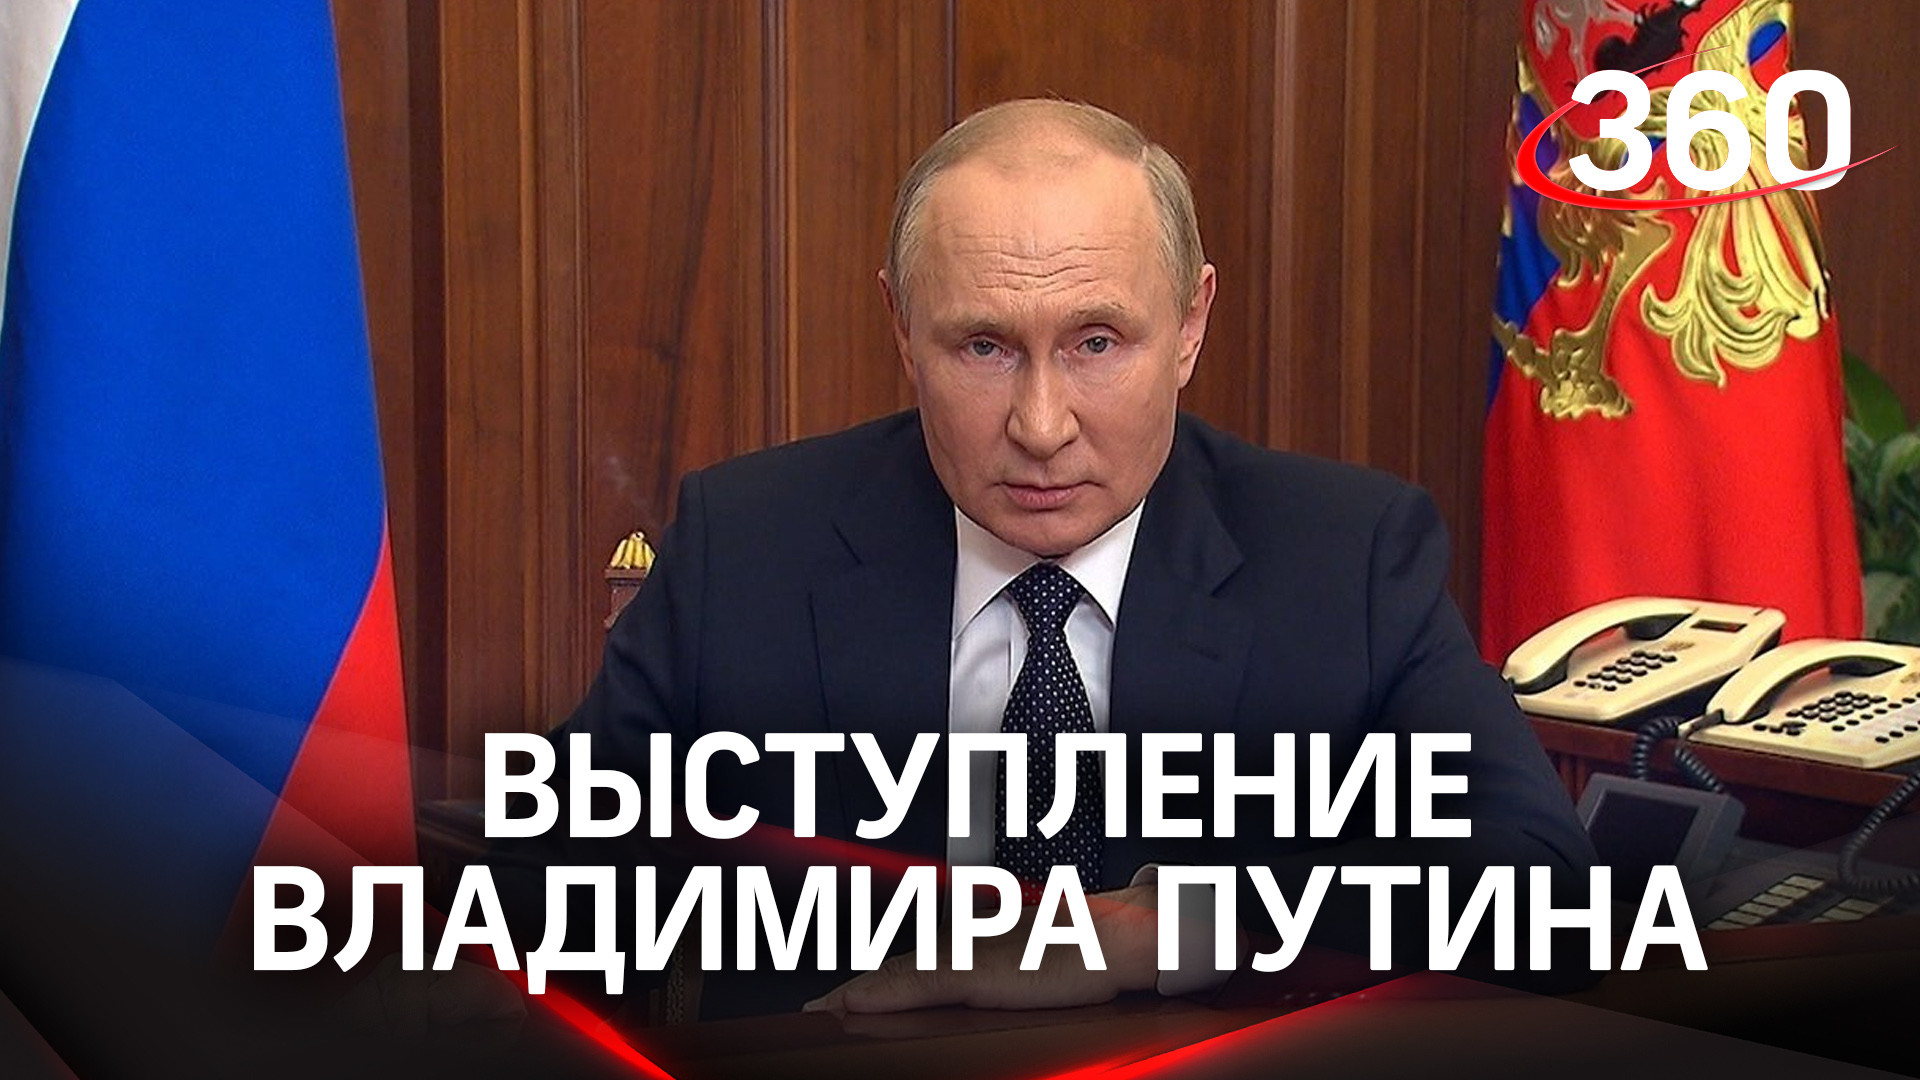 Полное видео выступления Владимира Путина. Главные заявления